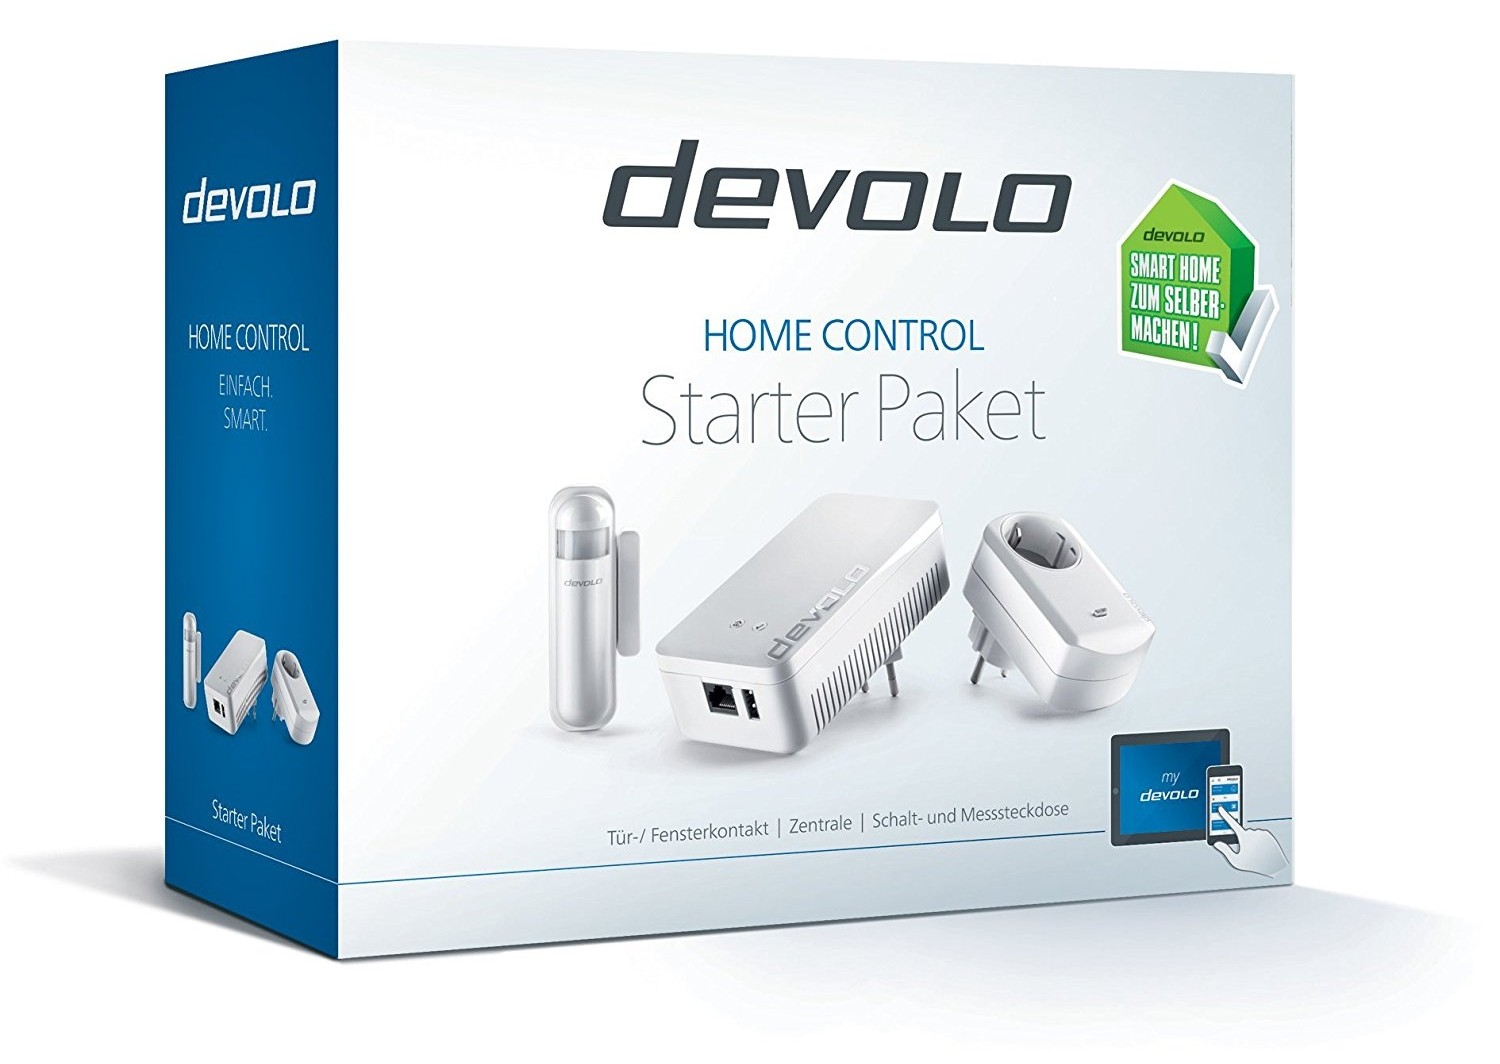 Smart Home Devolo Home Control versteht jetzt Google Home: Sprachsteuerung für das smarte Zuhause - News, Bild 1